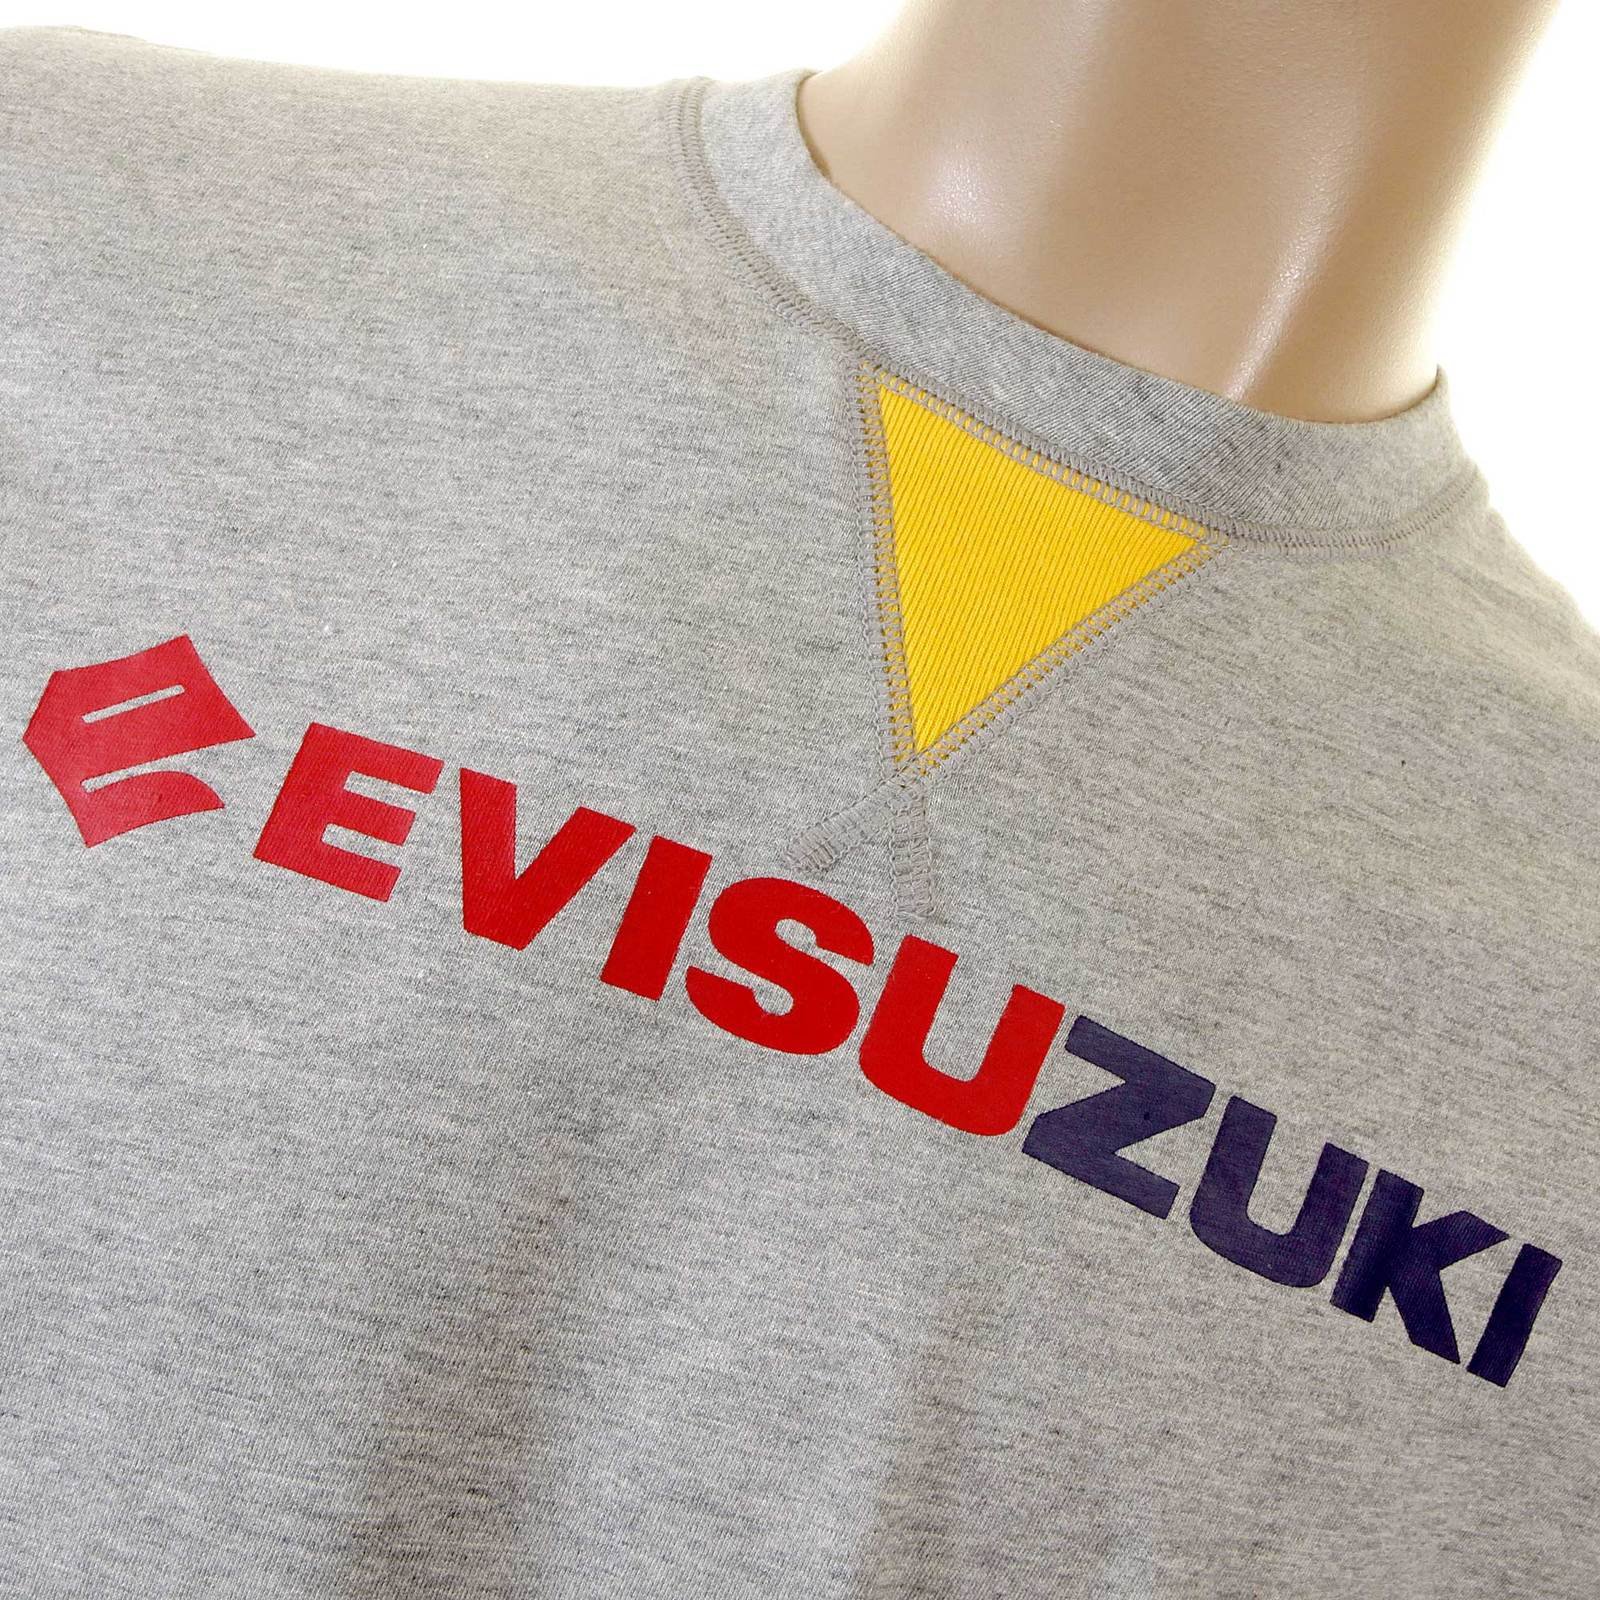 EVISU Marl Grey Early Original Genuine Rare Evisuzuki EV1059 JM1 t Shirt EVIS1117